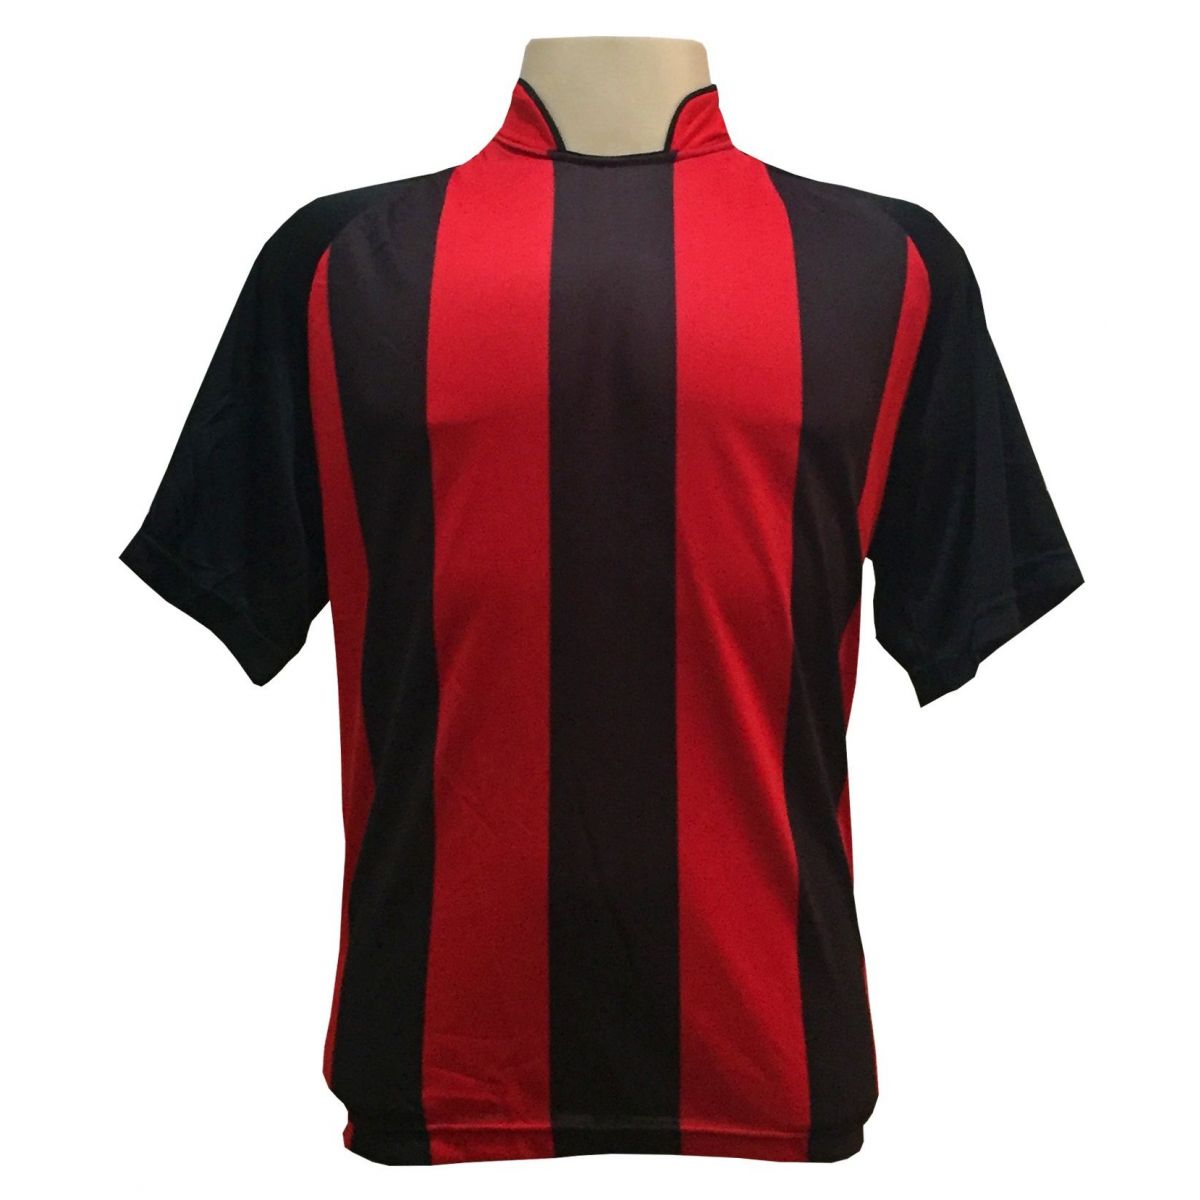 Uniforme Esportivo com 20 camisas modelo Milan Preto/Vermelho + 20 calções modelo Madrid Preto + Brindes